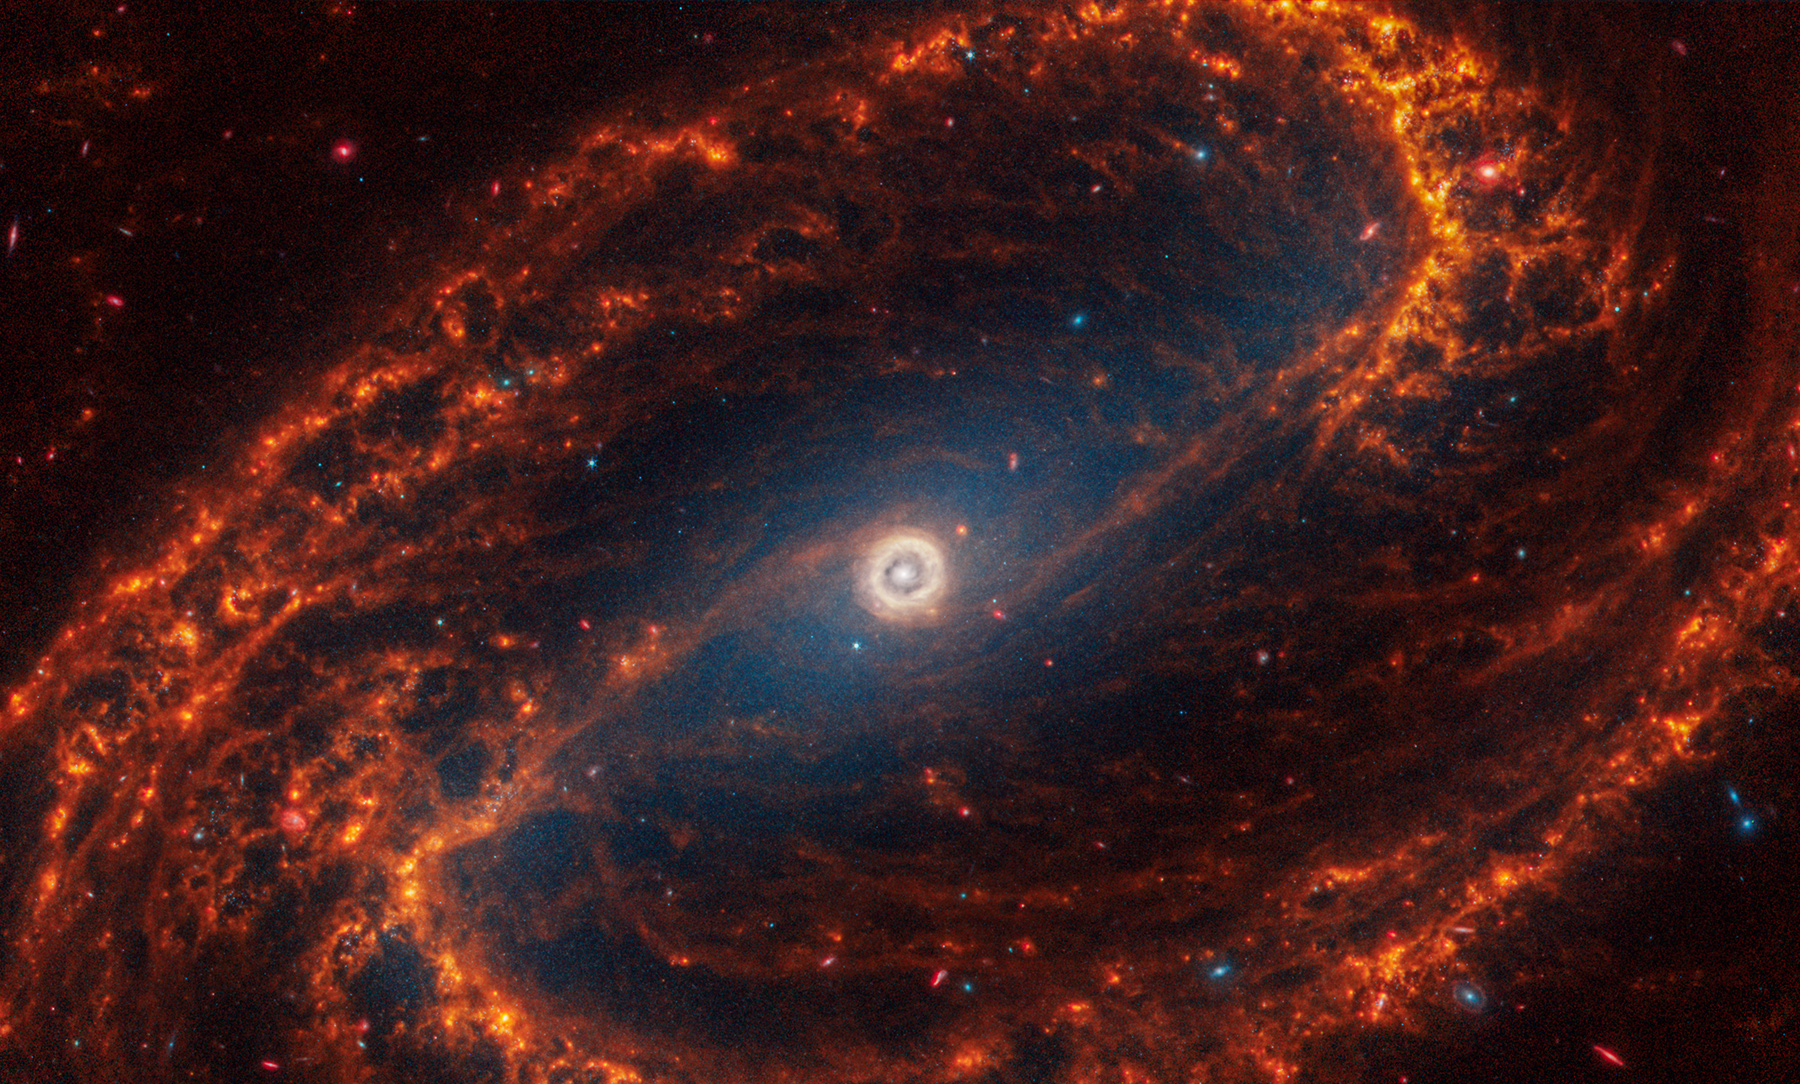 NGC 1300&nbsp;&mdash; галактика в созвездии Эридан. В центре спирали расположена сверхмассивная черная дыра. Галактика находится на расстоянии 69 мл световых лет